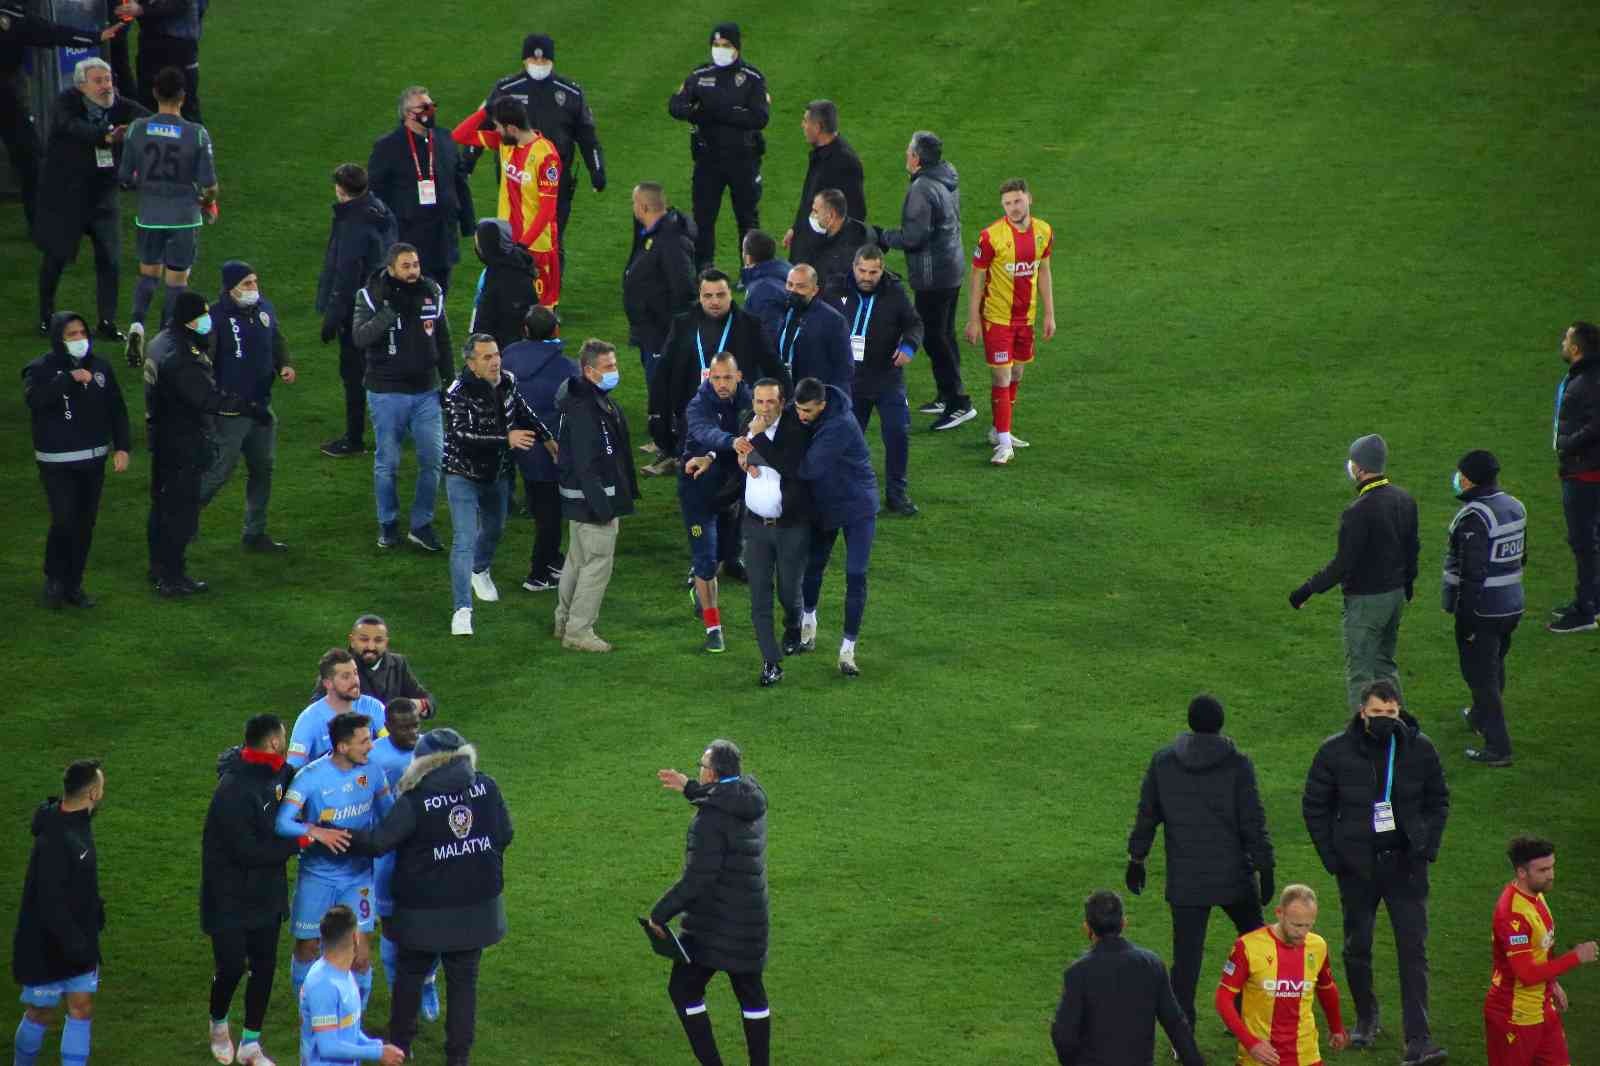 Yeni Malatyaspor-Kayserispor maçı sonrası hakem sahadan çıkamadı #malatya